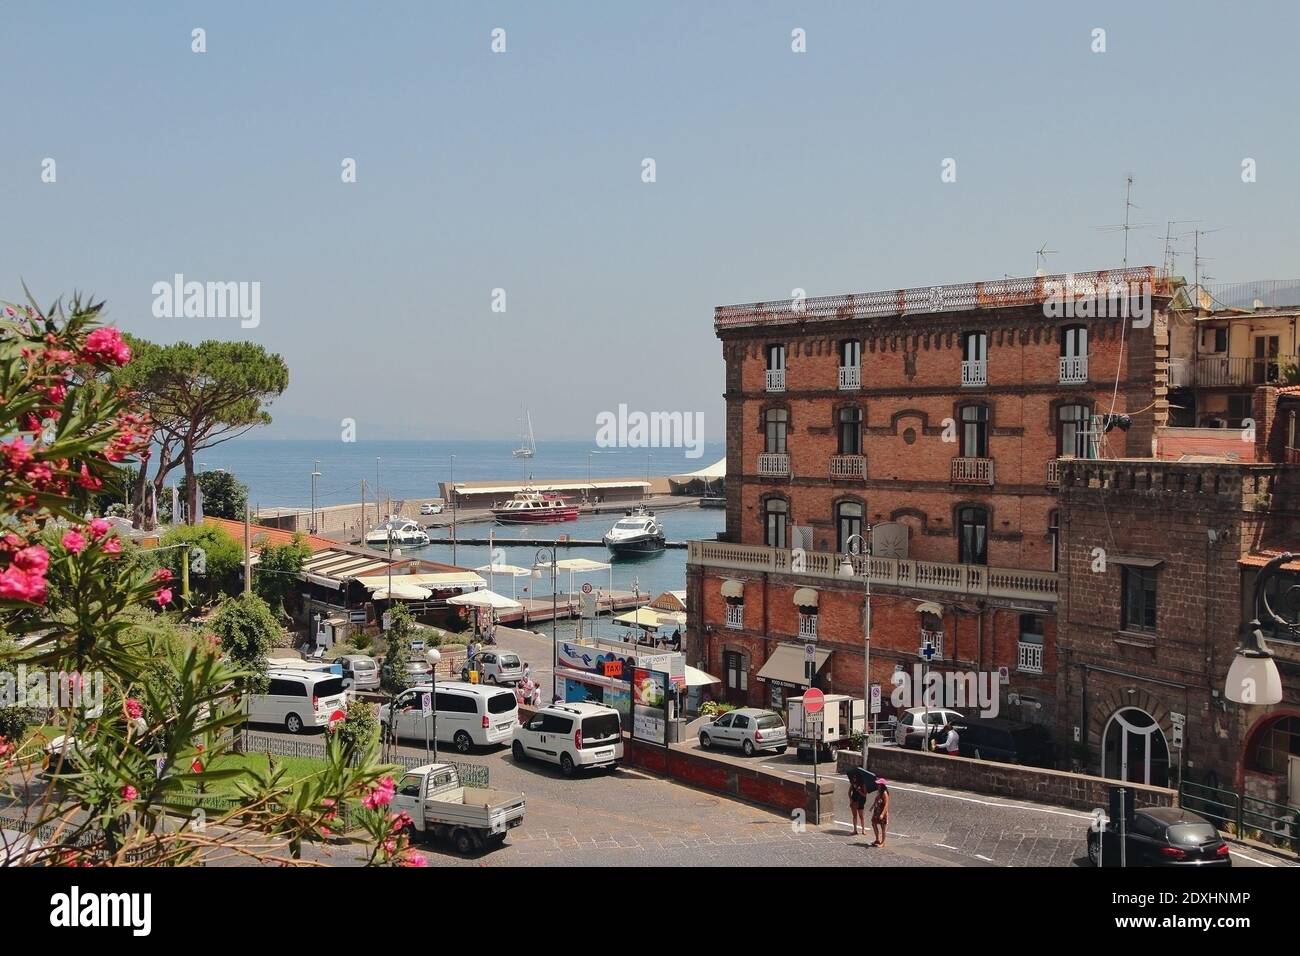 Sorrento, Italia - 9 de julio de 2019: Complejo turístico en la costa Foto de stock